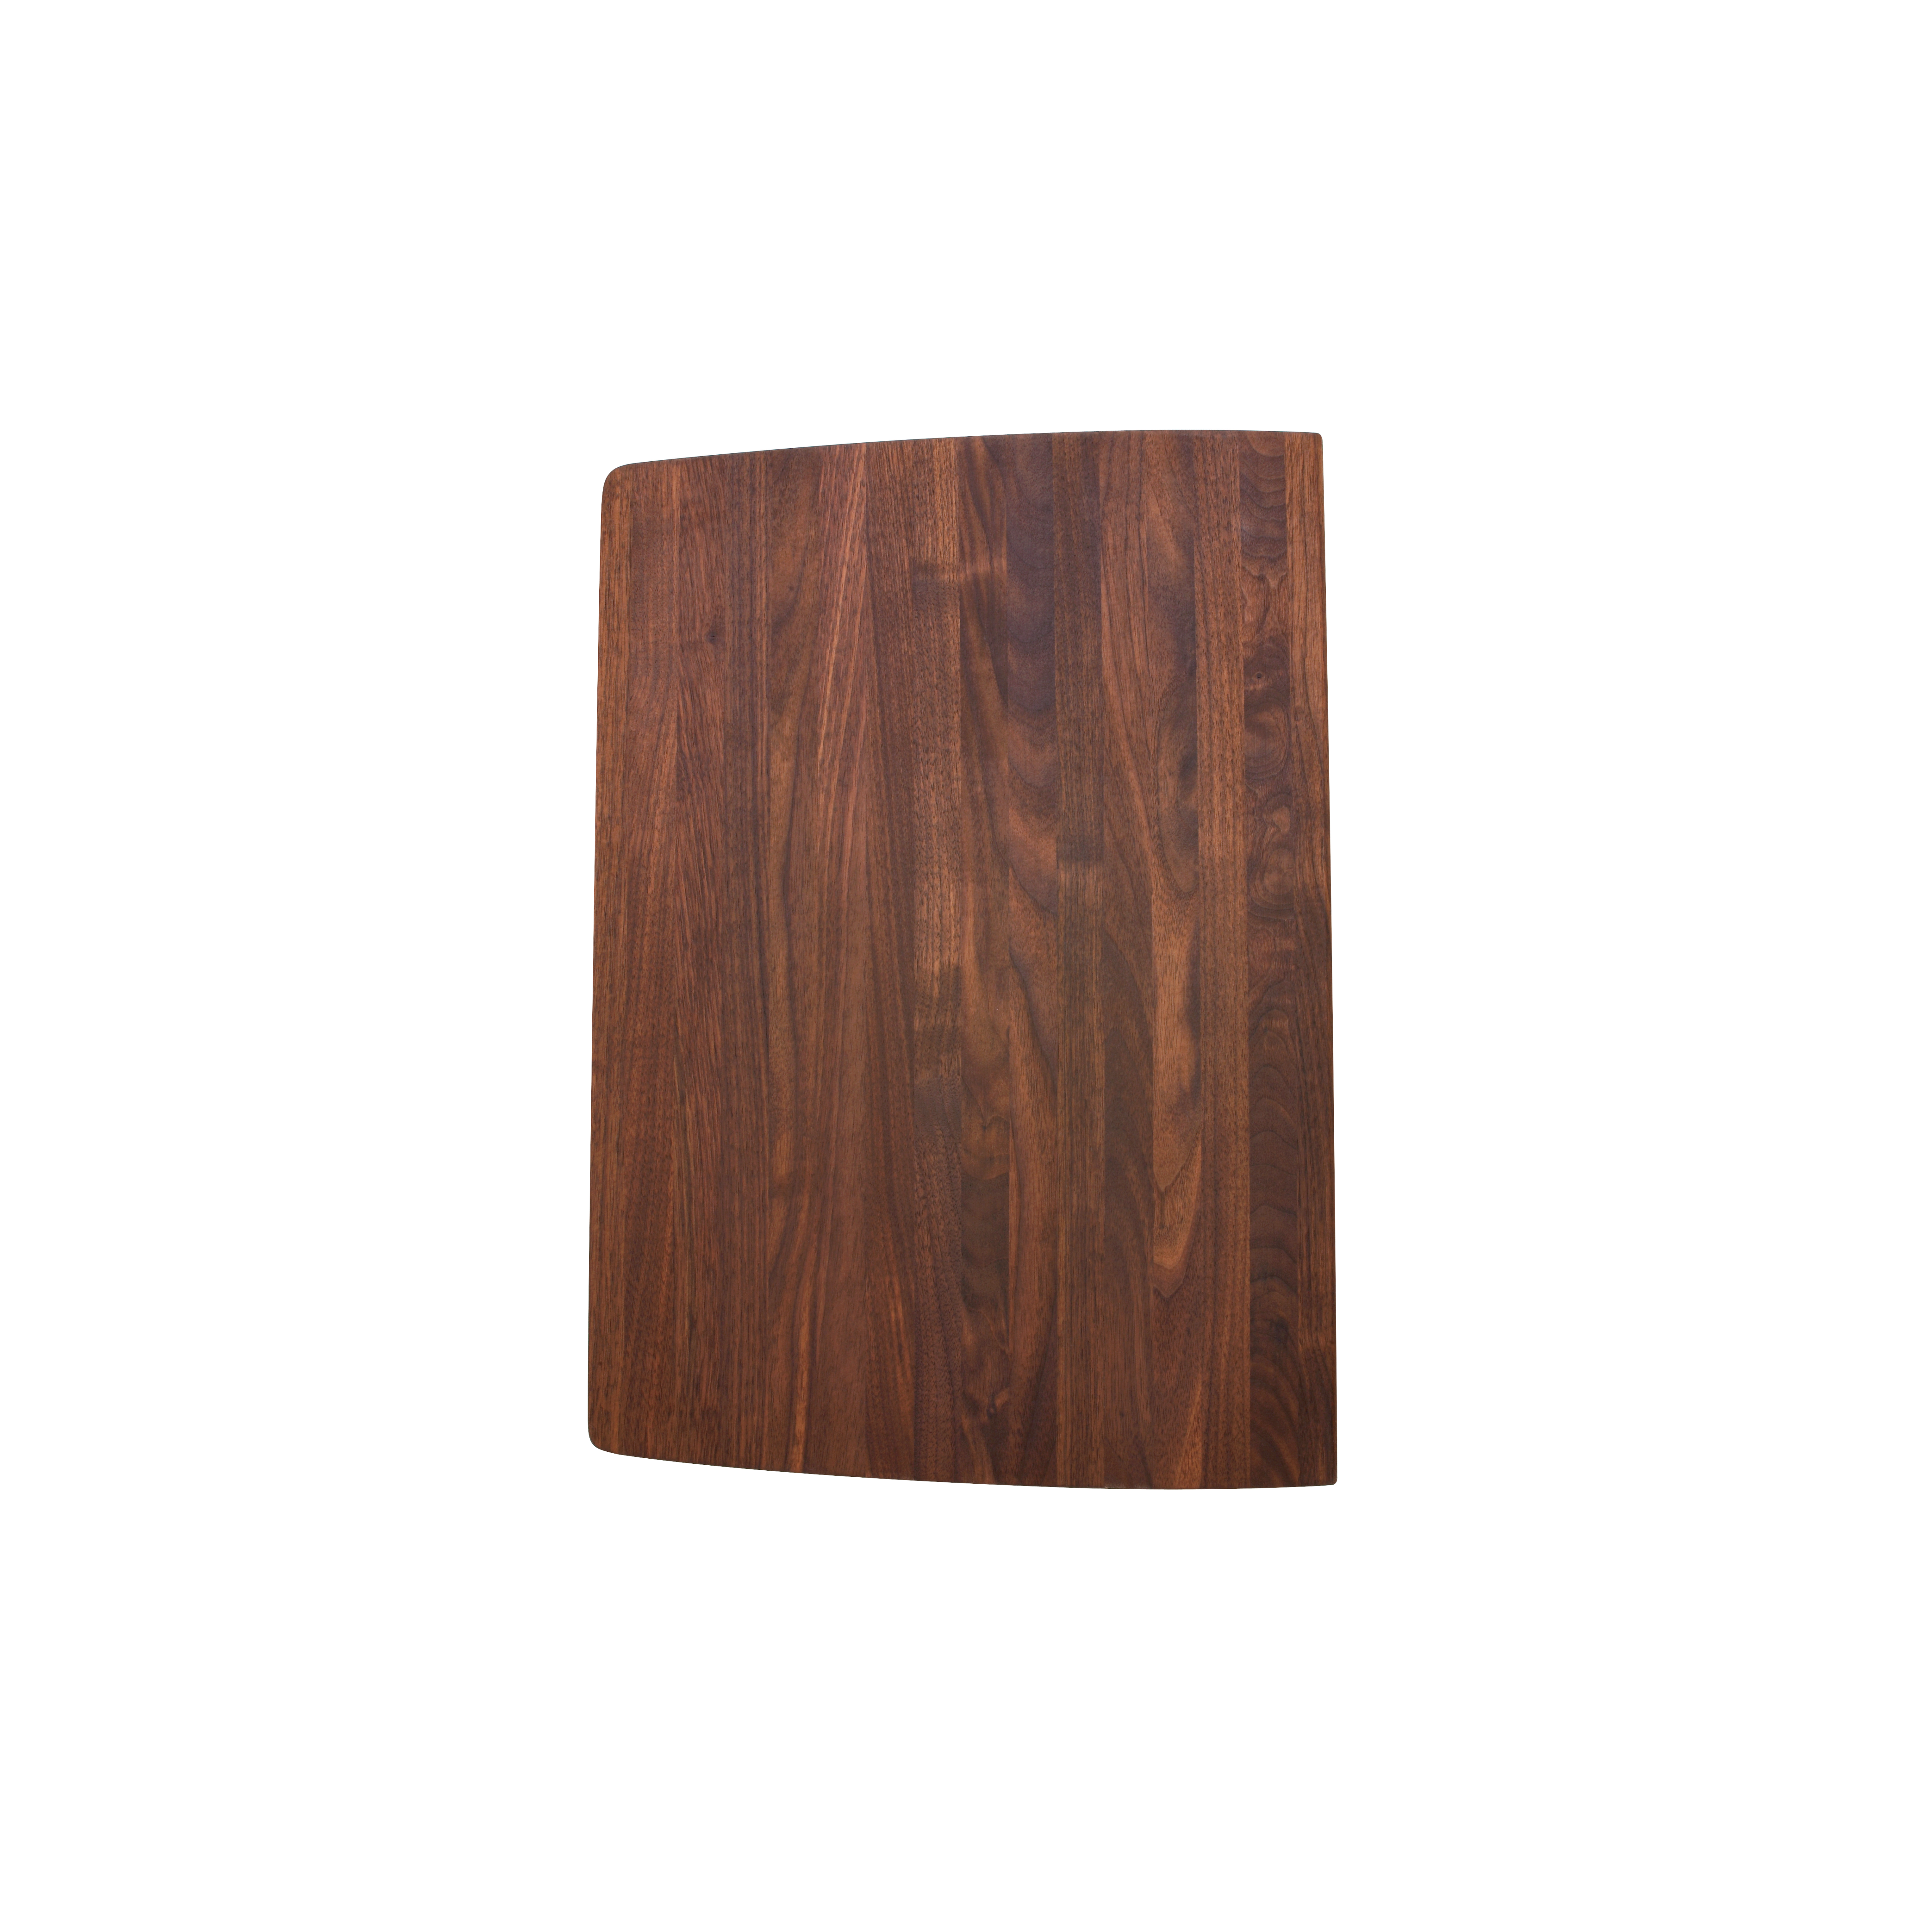 Blanco 440231 Diamond Wood Cutting Board